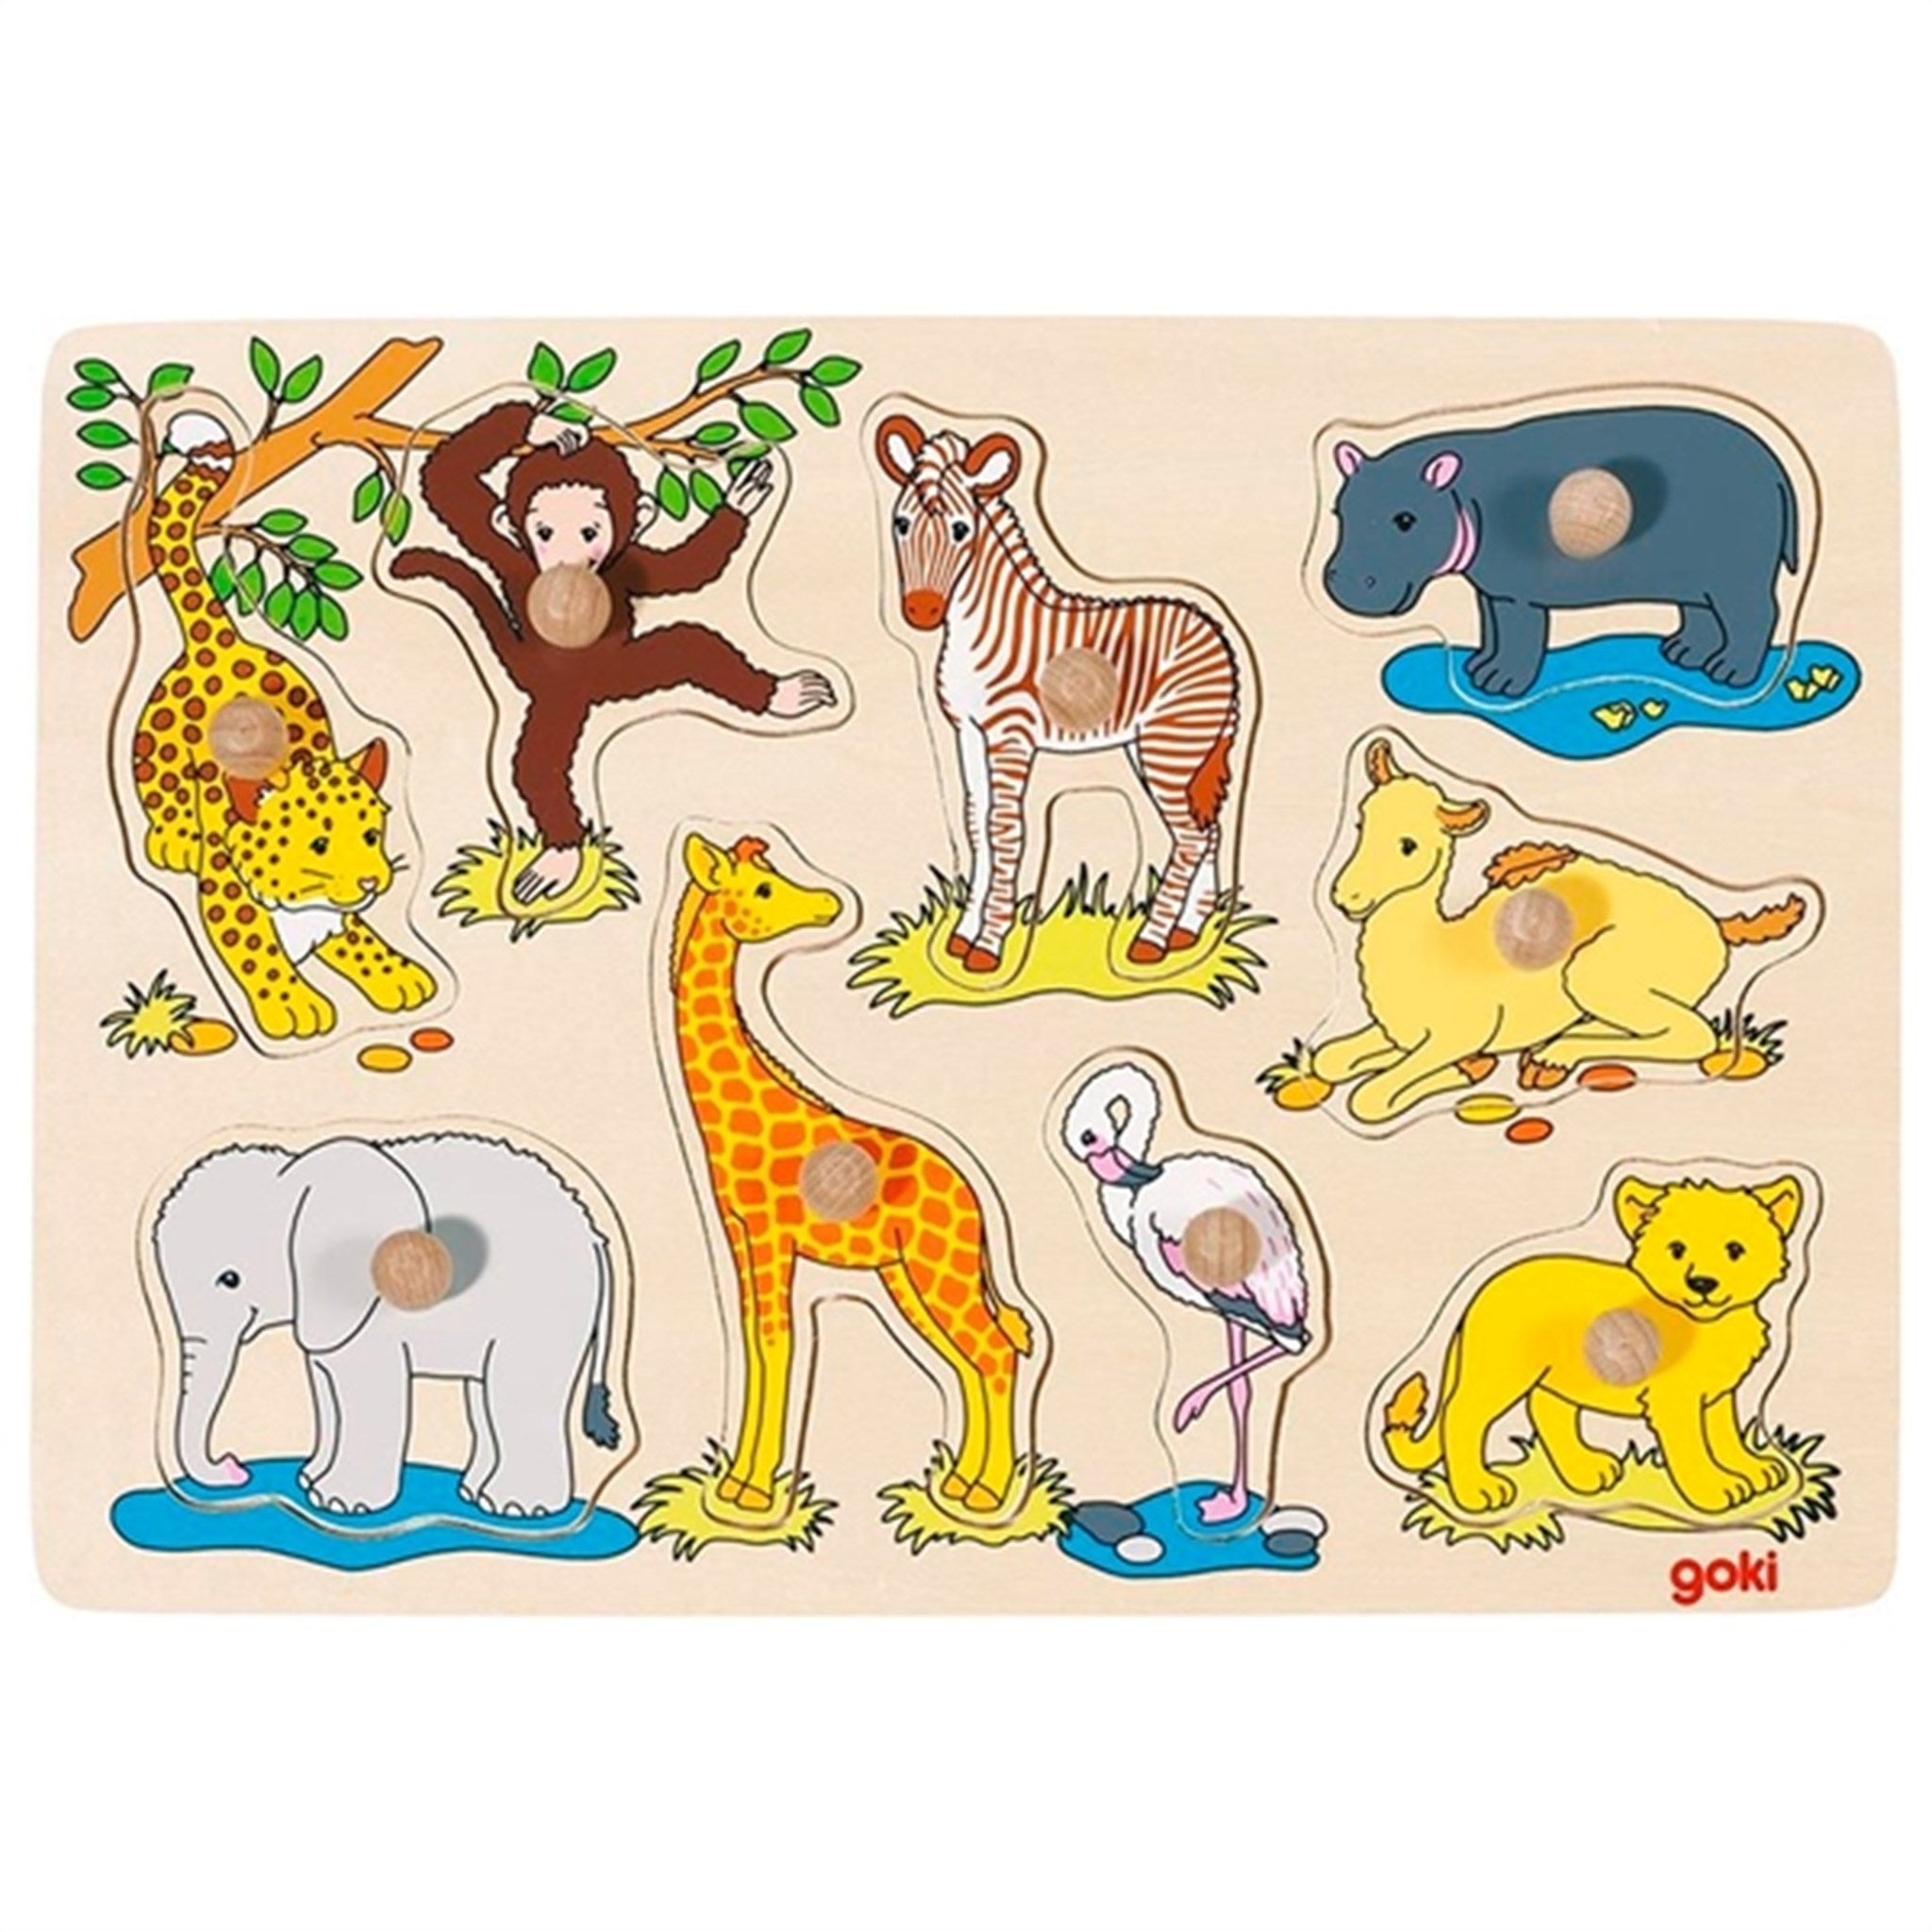 Goki Puzzle - Safari Baby Animal